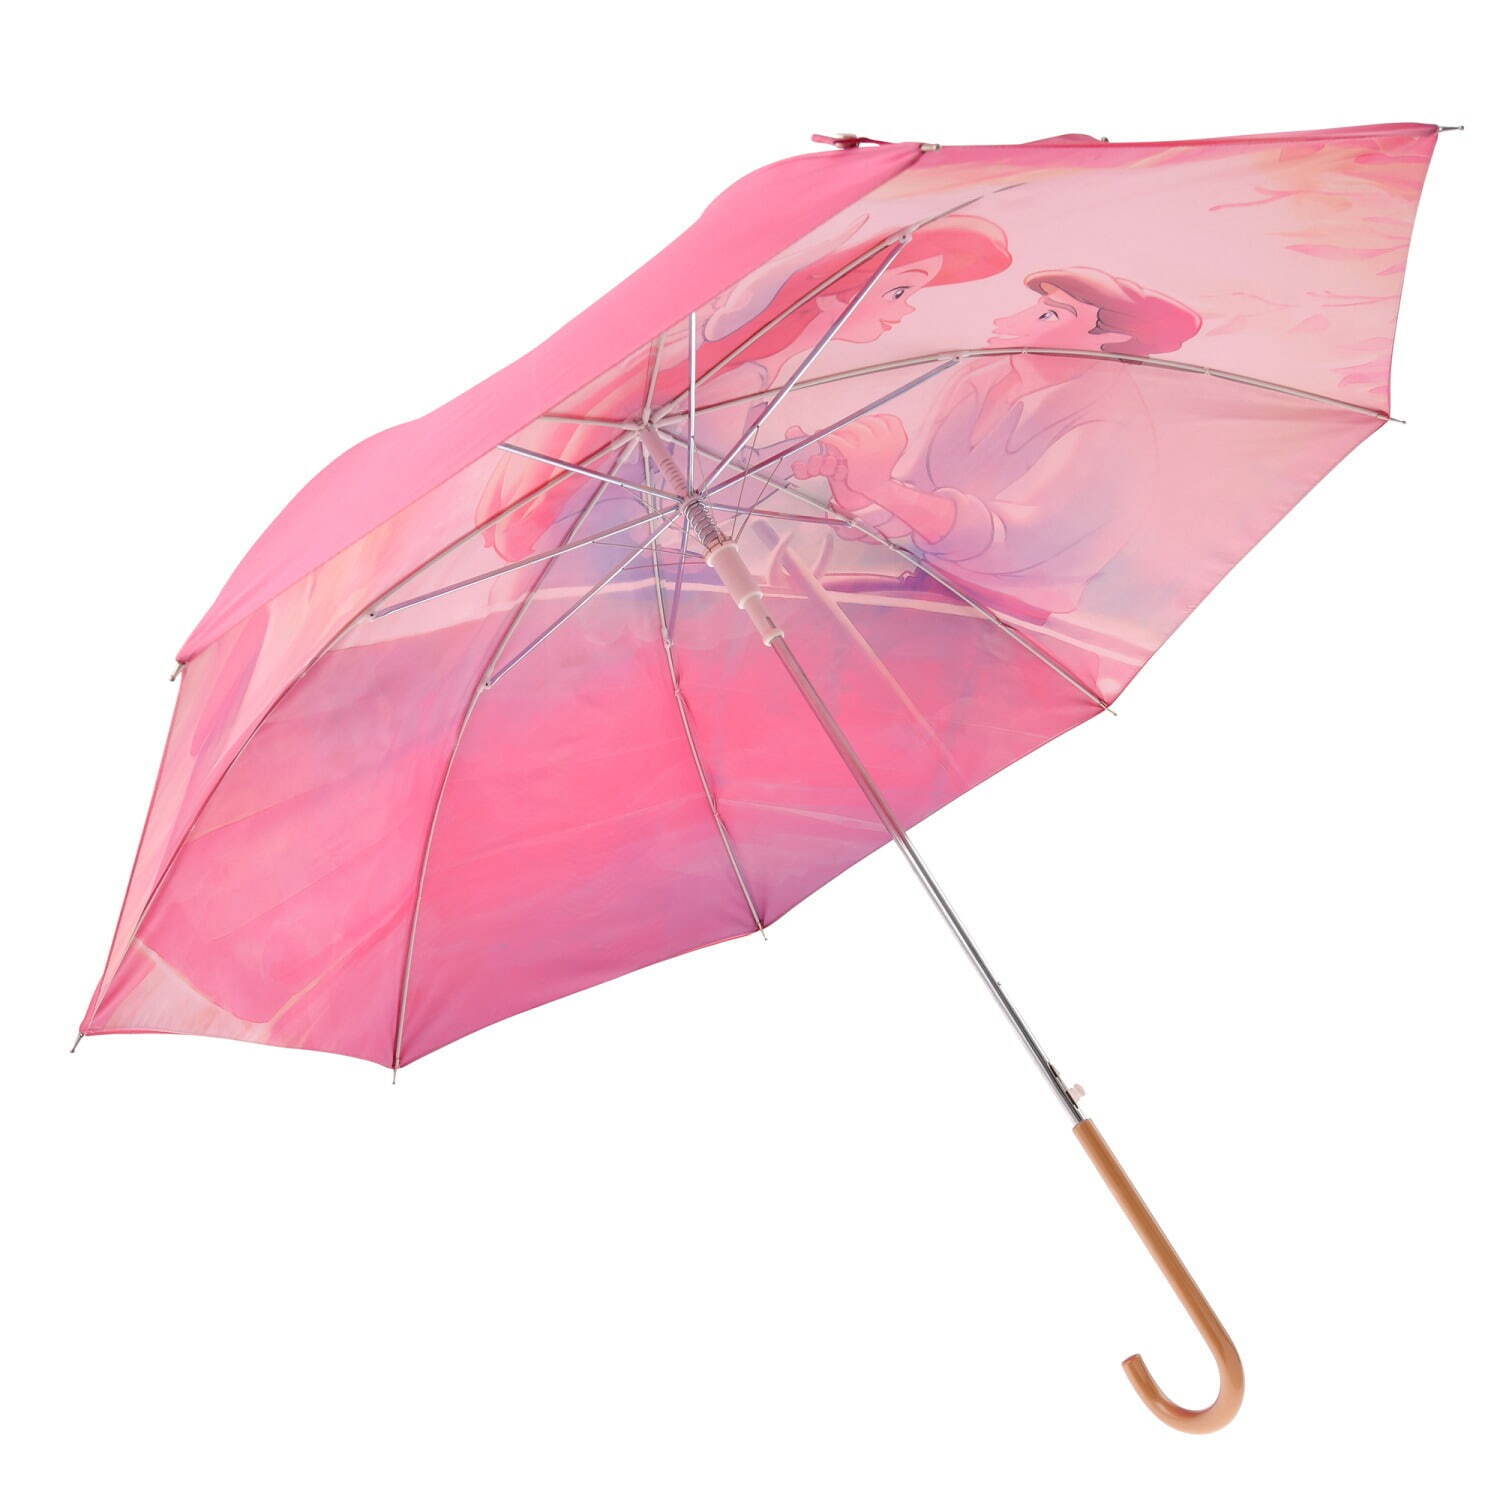 ラプンツェル 折りたたみ傘 ディズニー プリンセス 晴雨 兼用 レア 